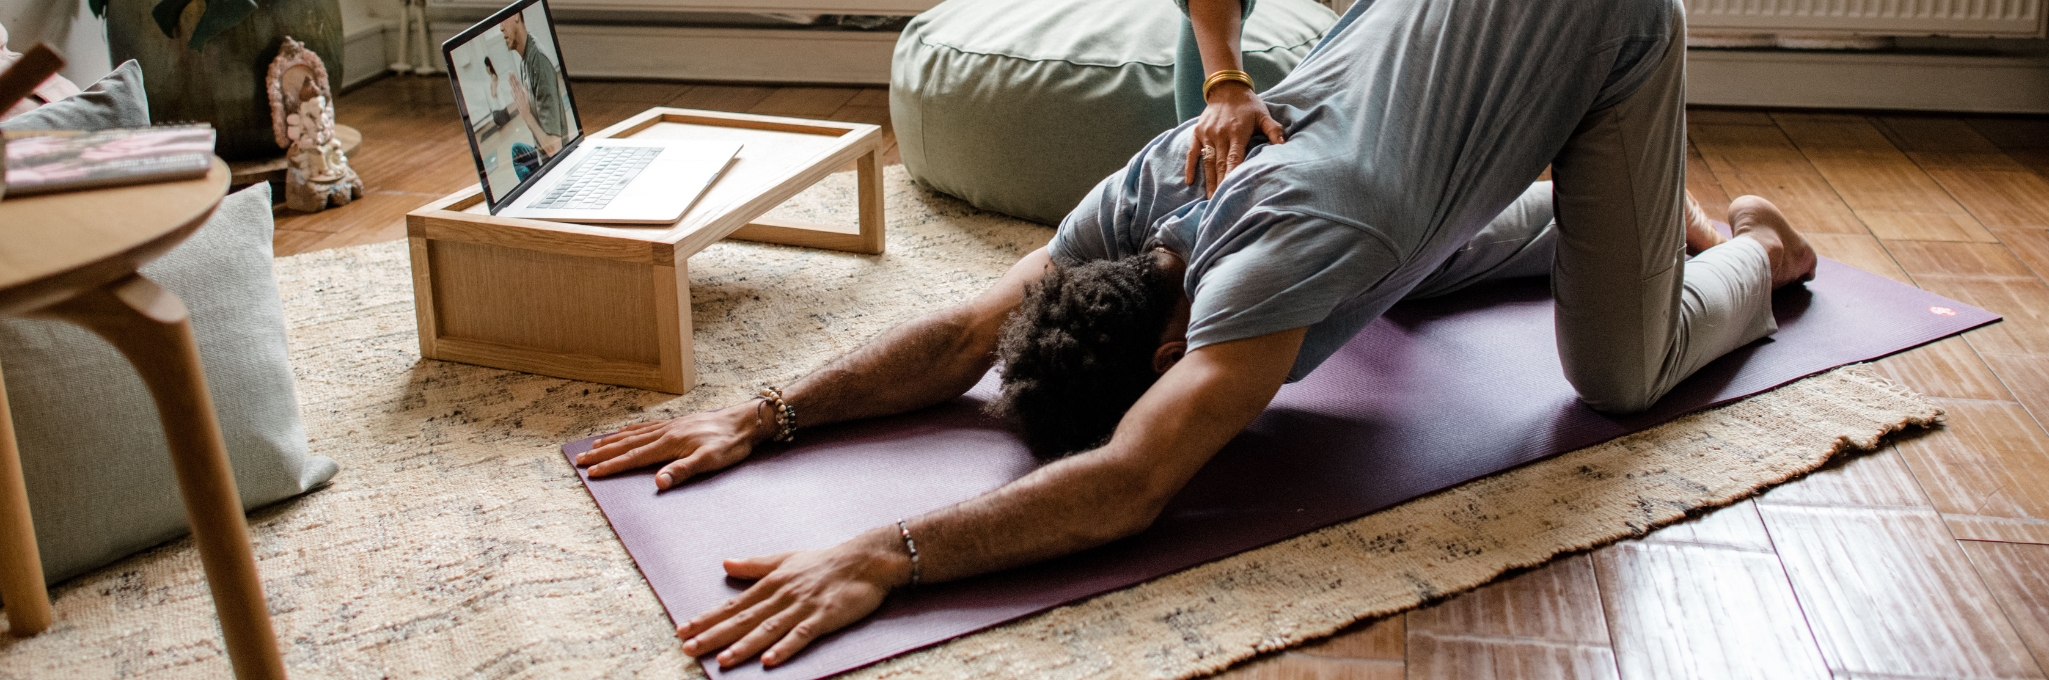 Online yoga en meditatie ademwerk lessen volgen